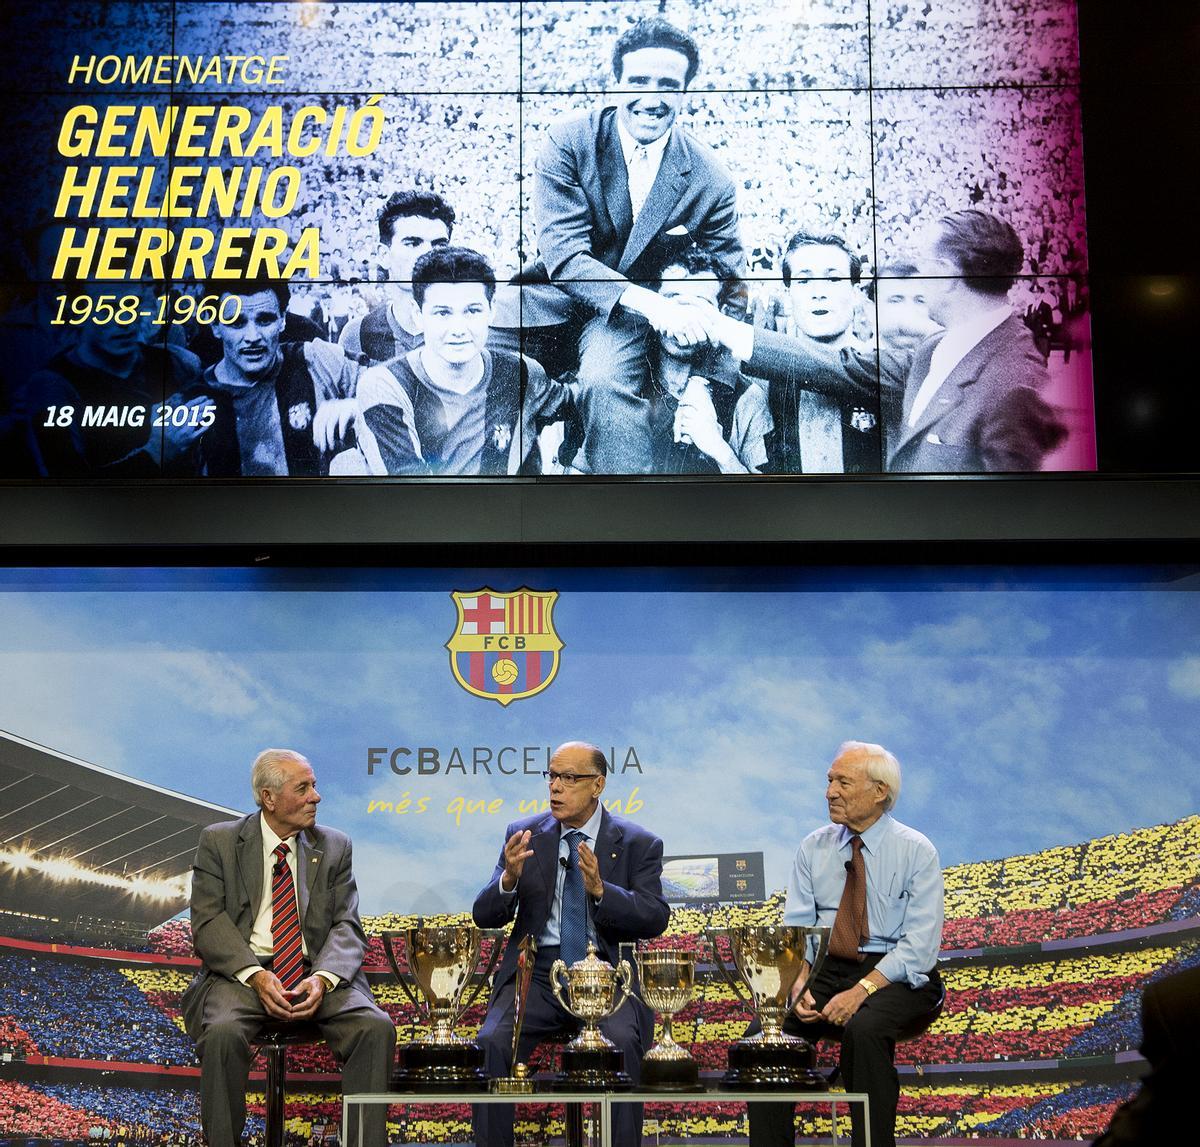 Homenaje a los jugadores del FC Barcelona que triunfaron con Helenio Herrera entre 1958 y 1960, como los míticos Luis Suárez, Justo Tejada, Olivella y otros.